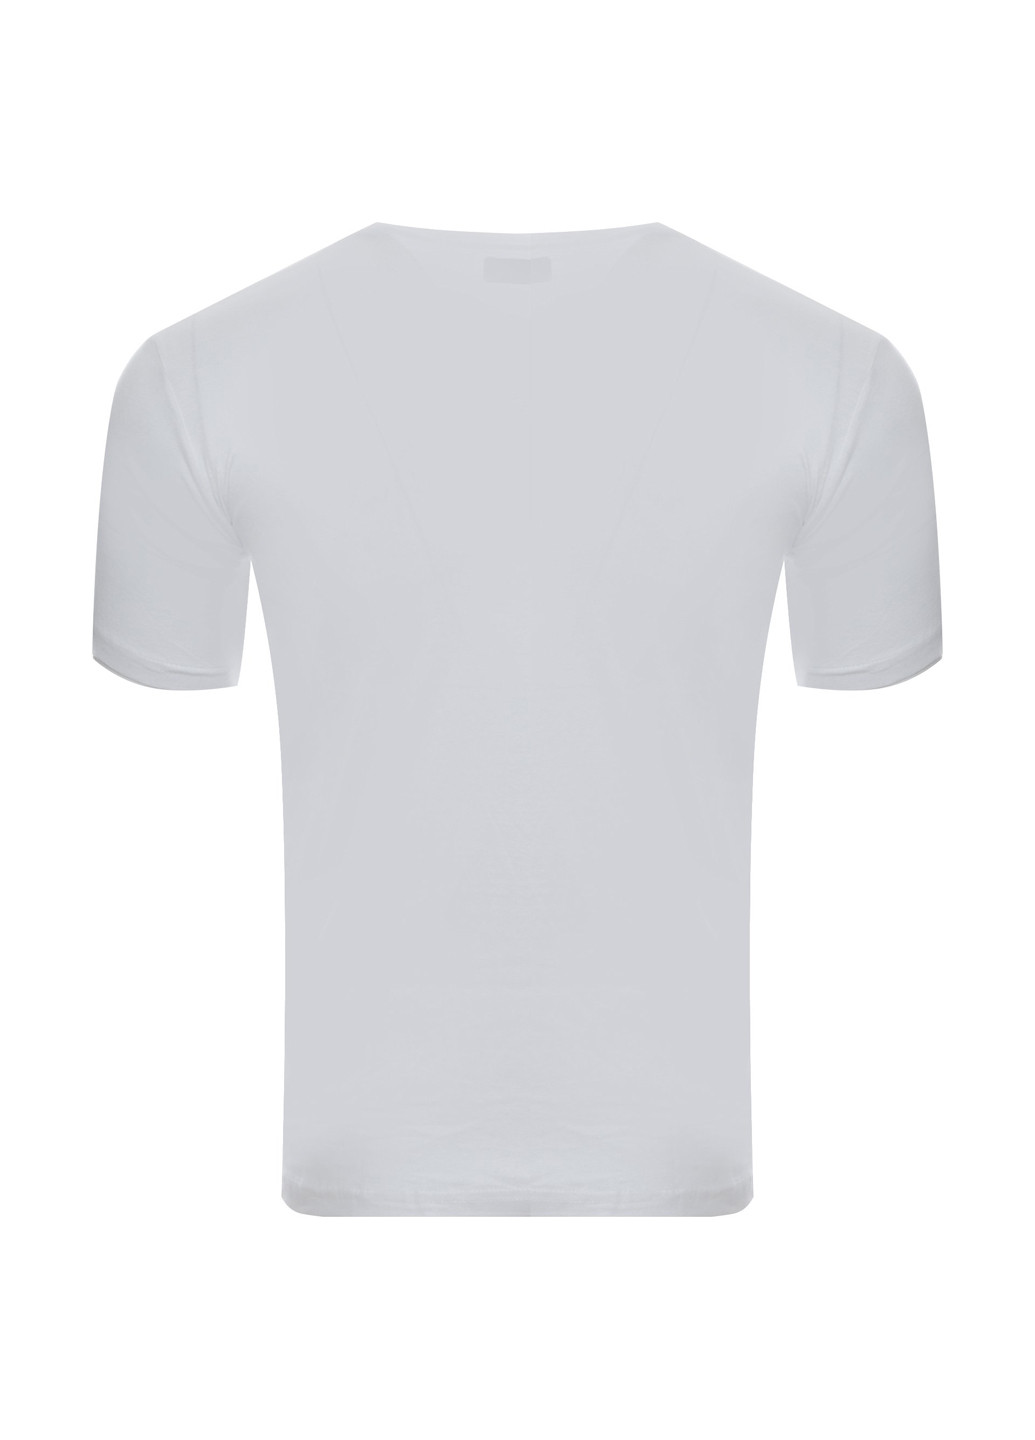 Біла футболка Kappa 304KZNO 001